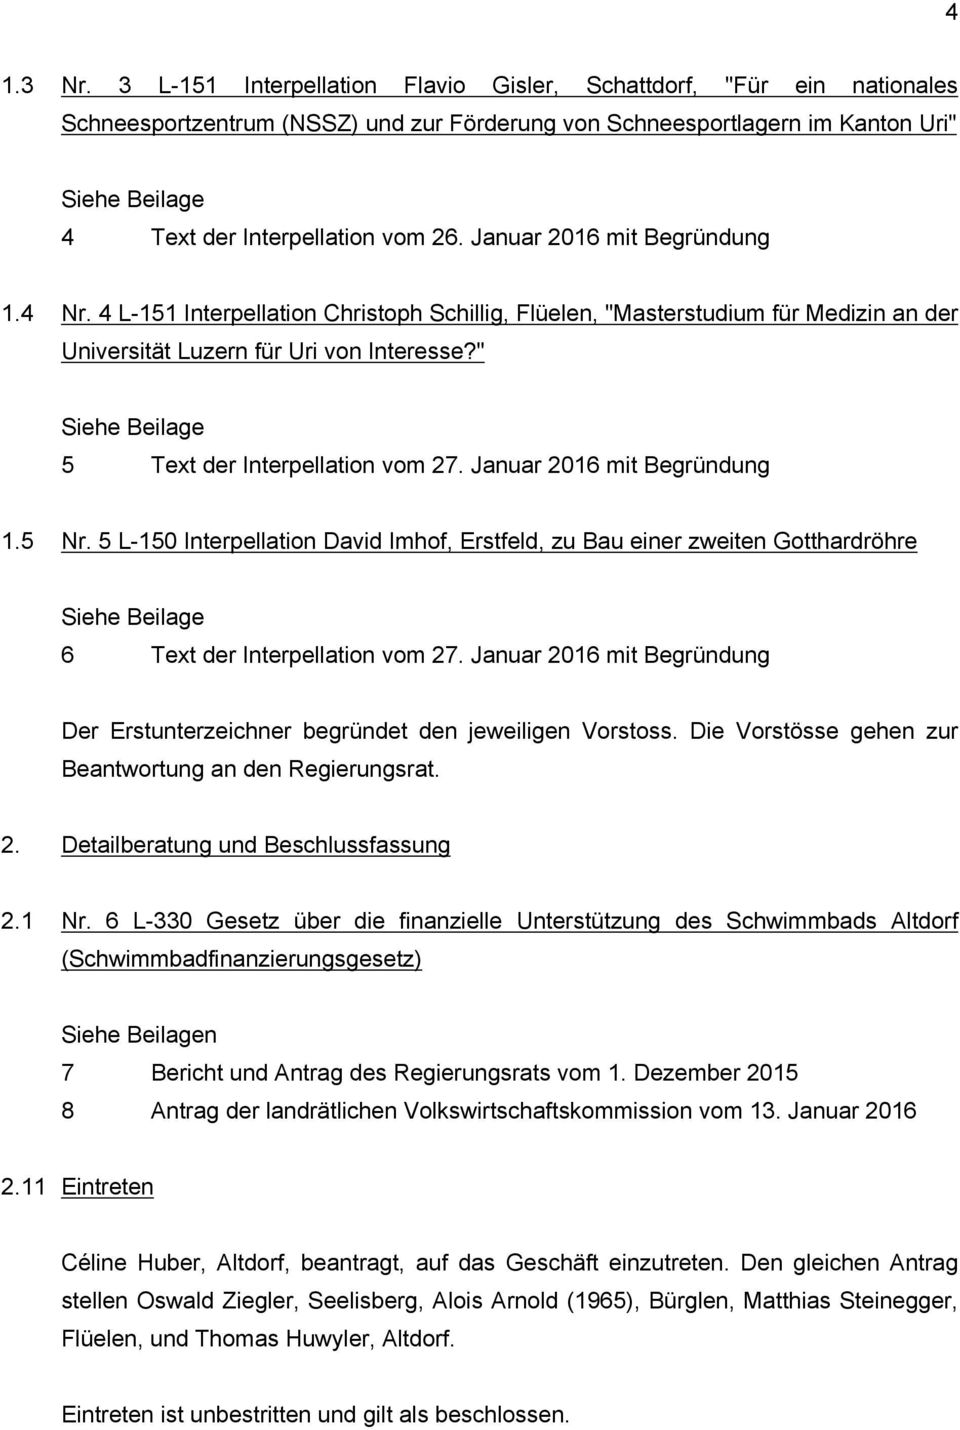 Januar 2016 mit Begründung 1.4 Nr. 4 L-151 Interpellation Christoph Schillig, Flüelen, "Masterstudium für Medizin an der Universität Luzern für Uri von Interesse?